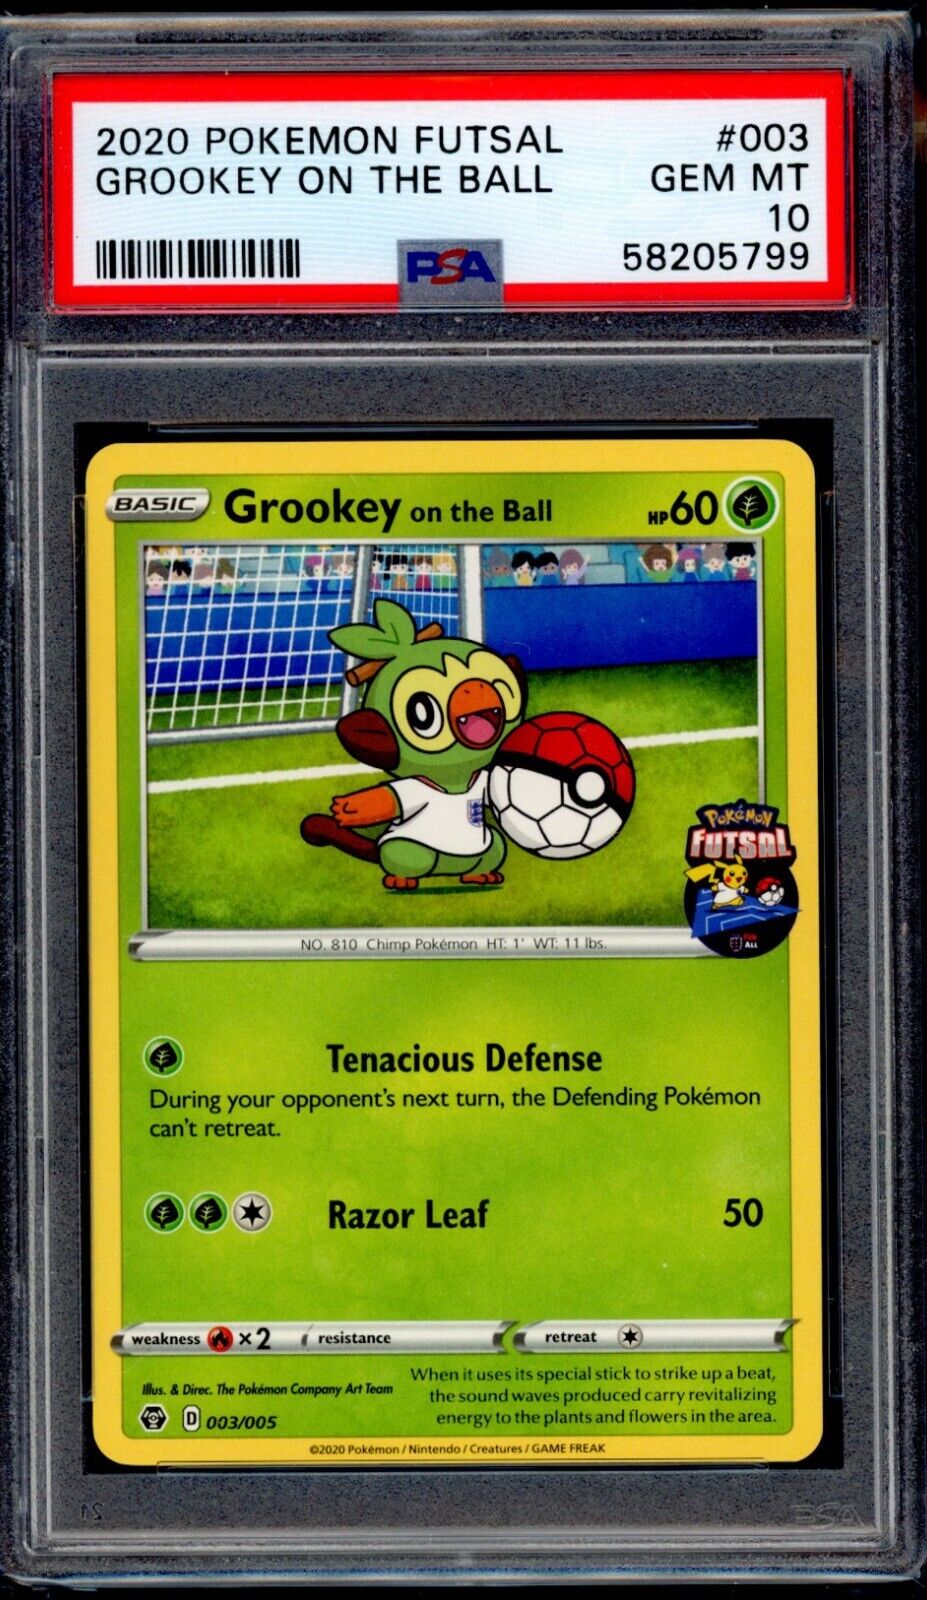 PSA 10 Grookey on the Ball 2020 Pokemon Card 003/005 Futsal Promo